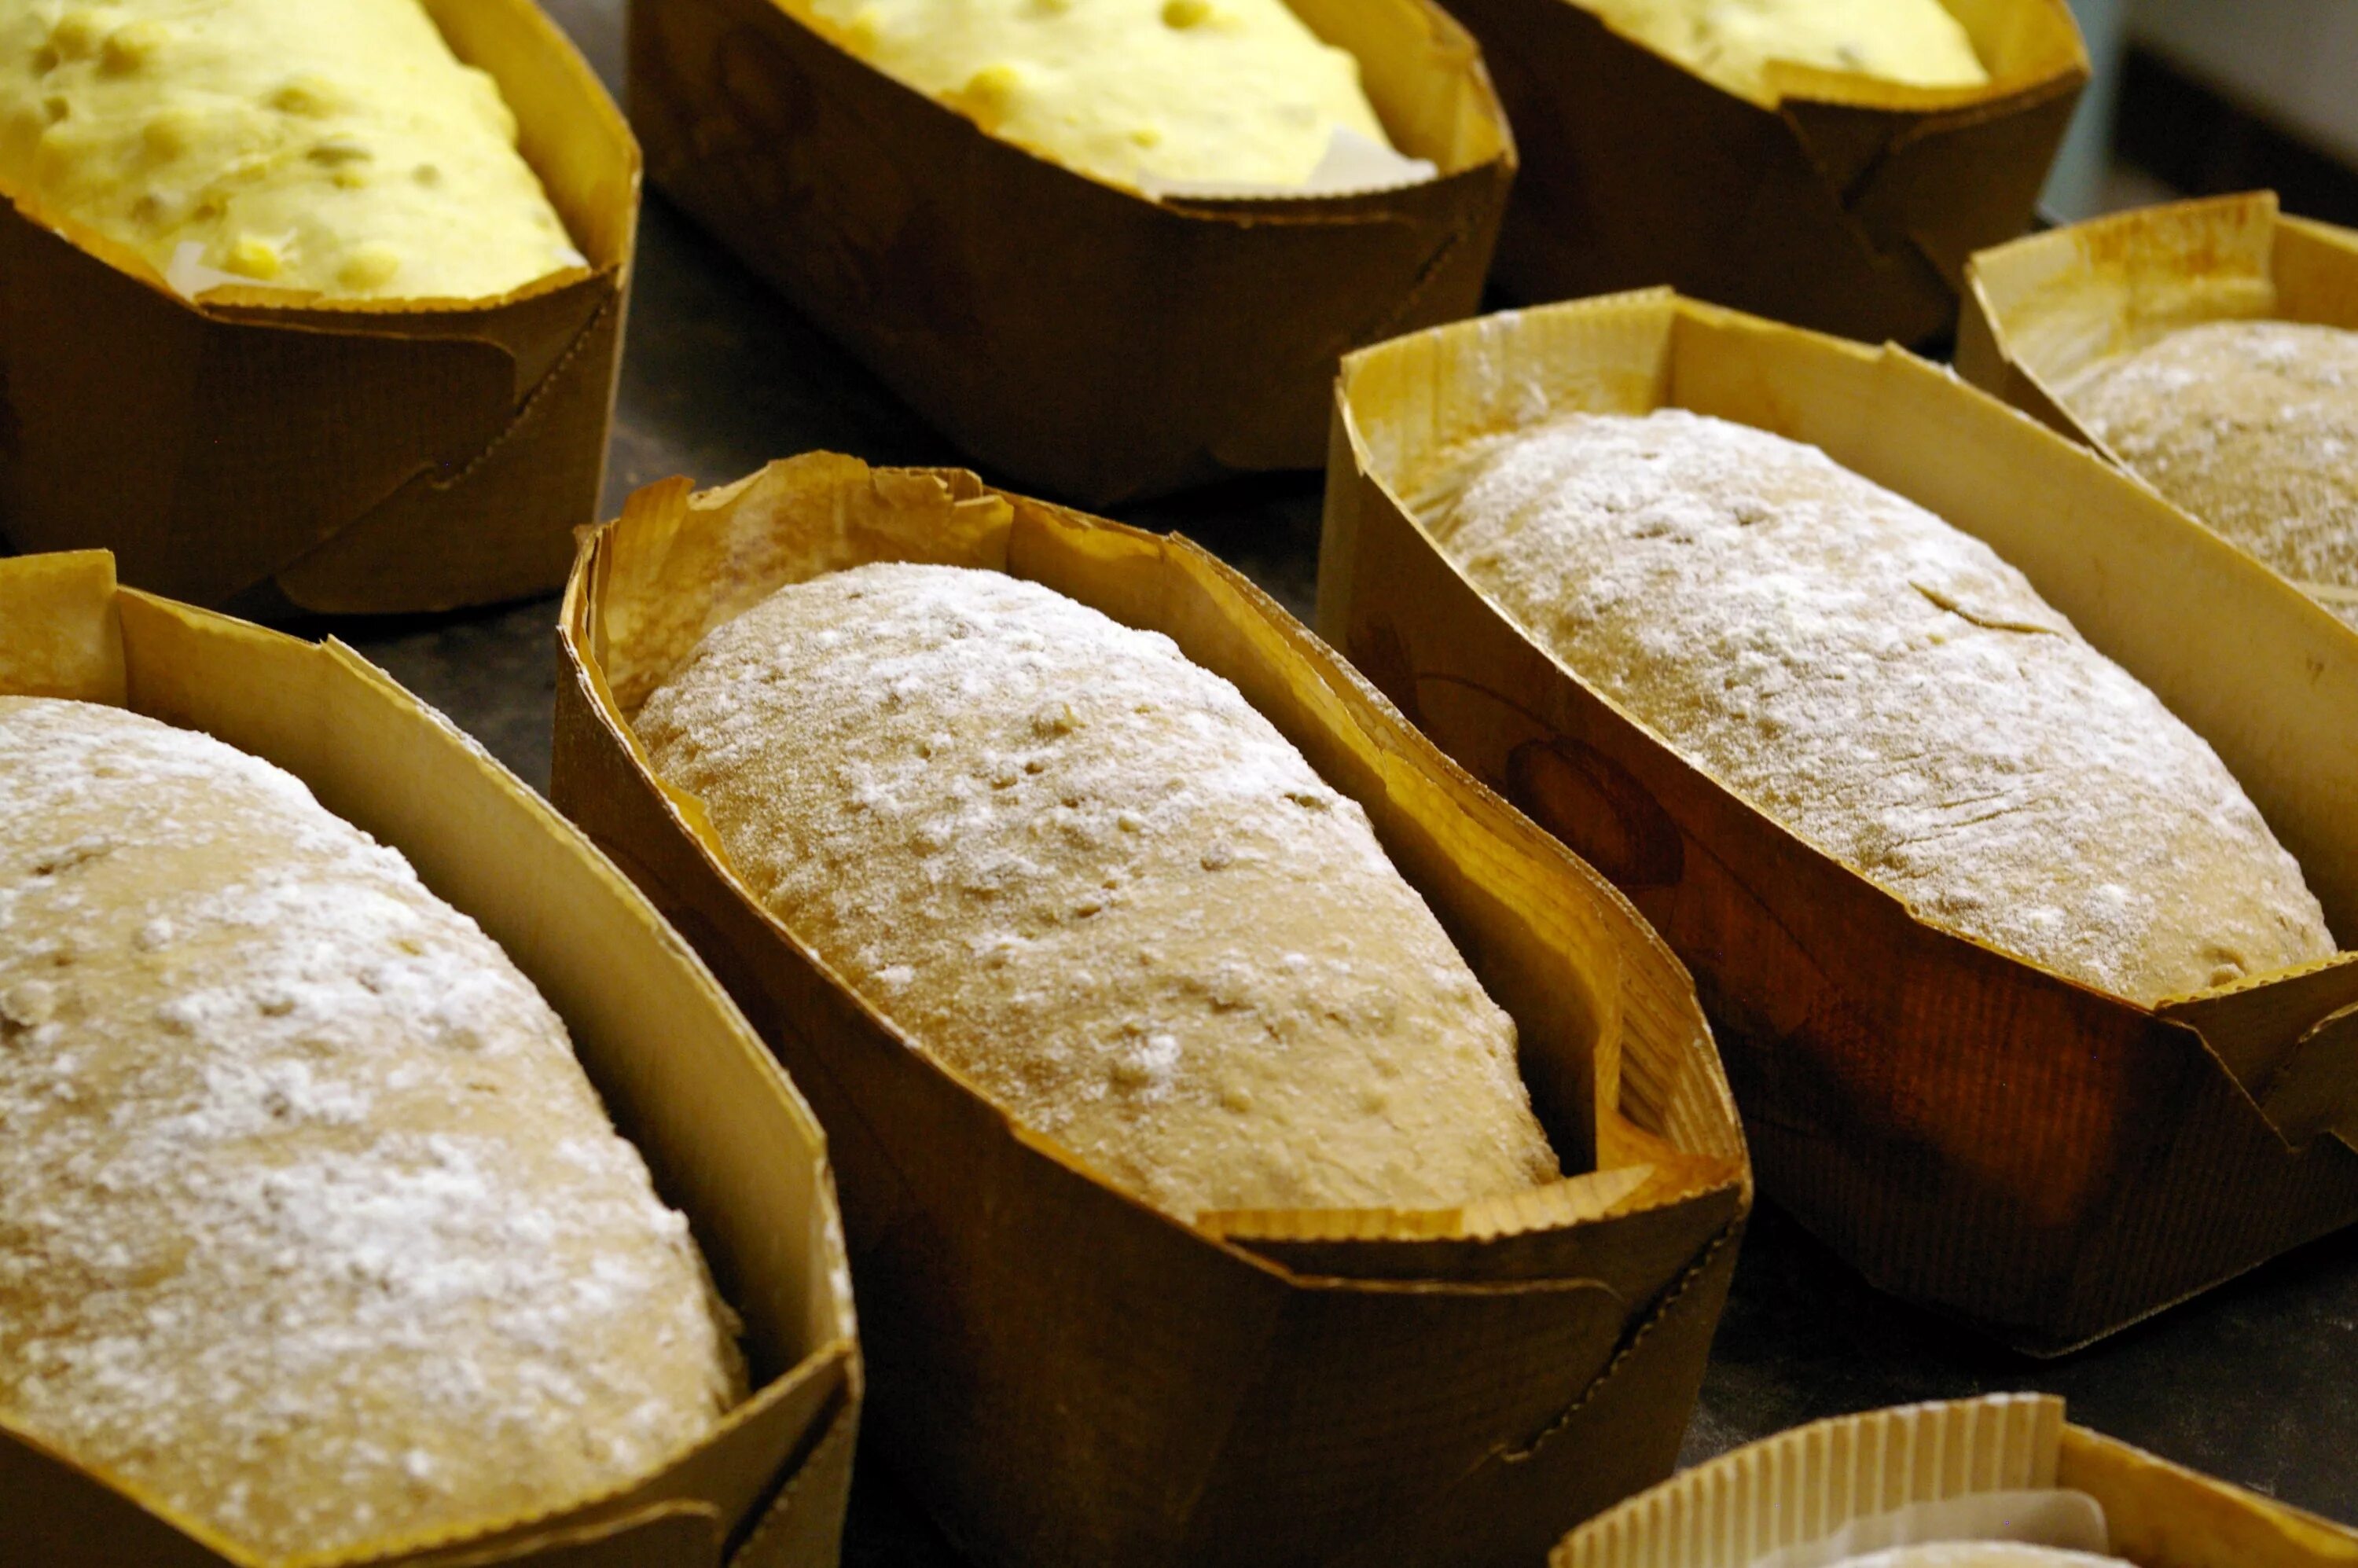 Приготовление ржаного теста. Формовка хлеба. Приготовление в формах для хлеба. Тесто в форме для хлеба. Форма для формовки хлеба.